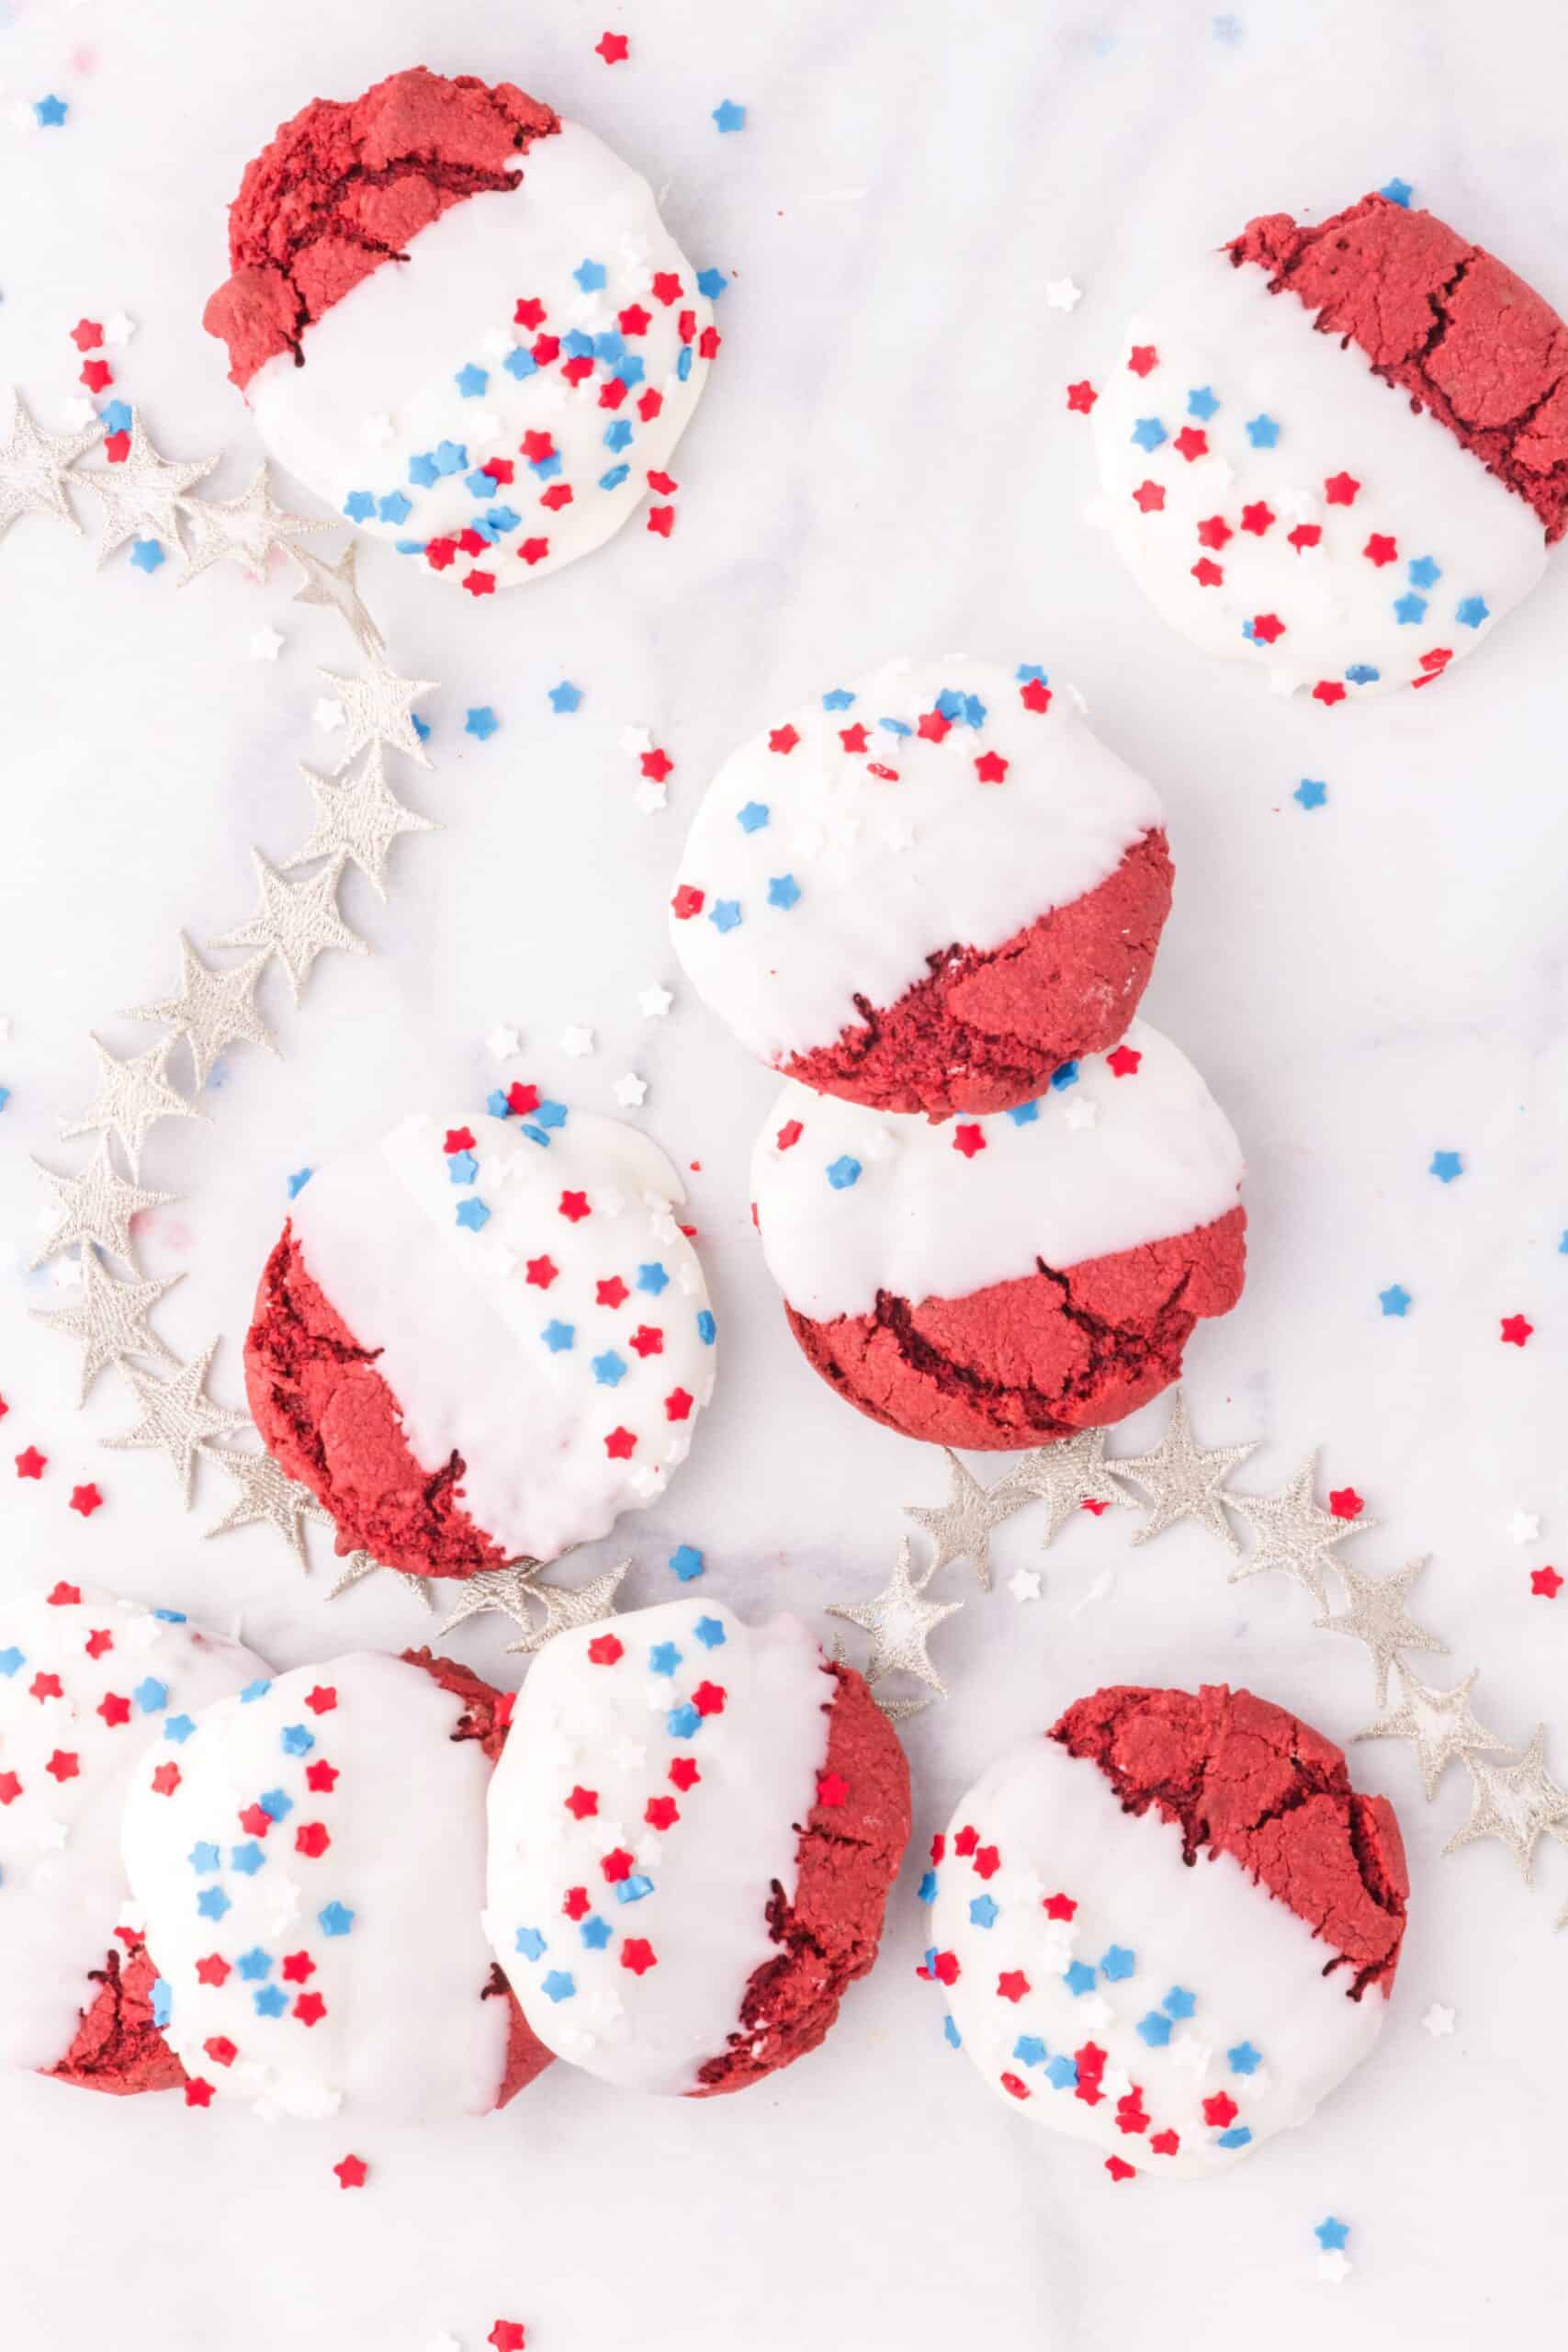 Red Velvet Fourth of July cookies (easy patriotic cookies recipe)